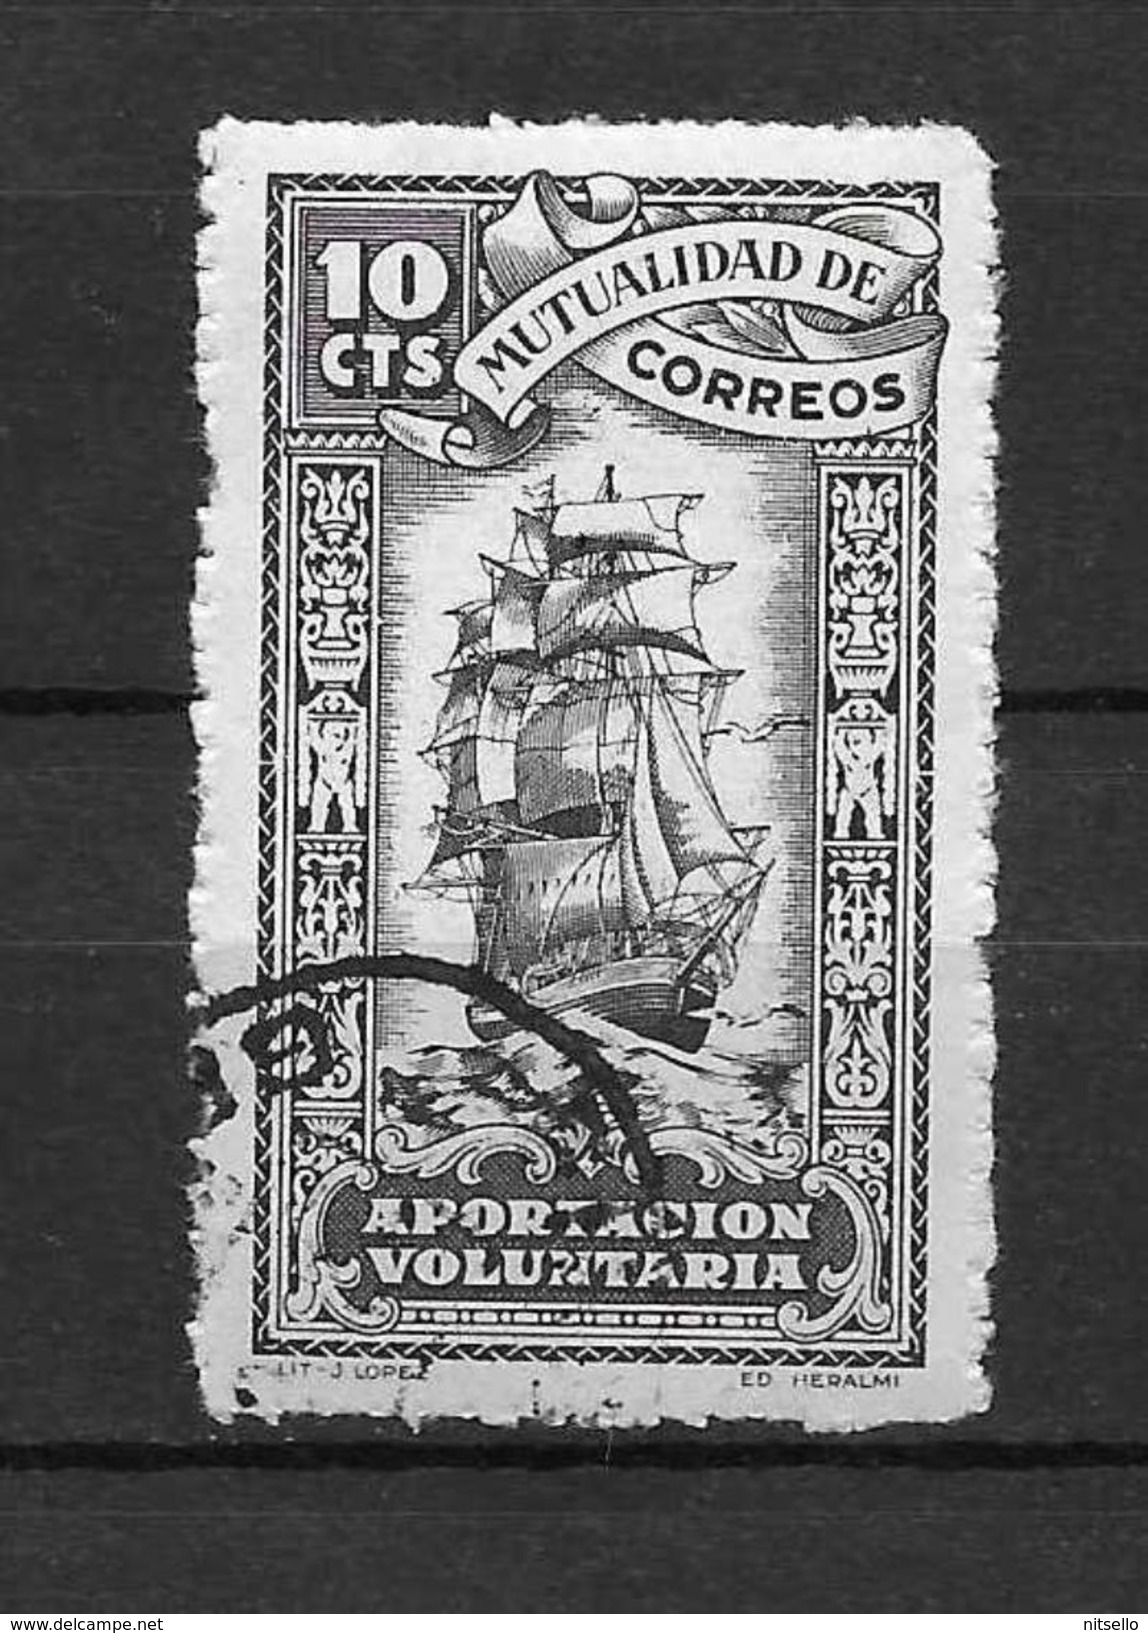 LOTE 1892 D  ///  MUTALIDAD DE CORREOS - Wohlfahrtsmarken